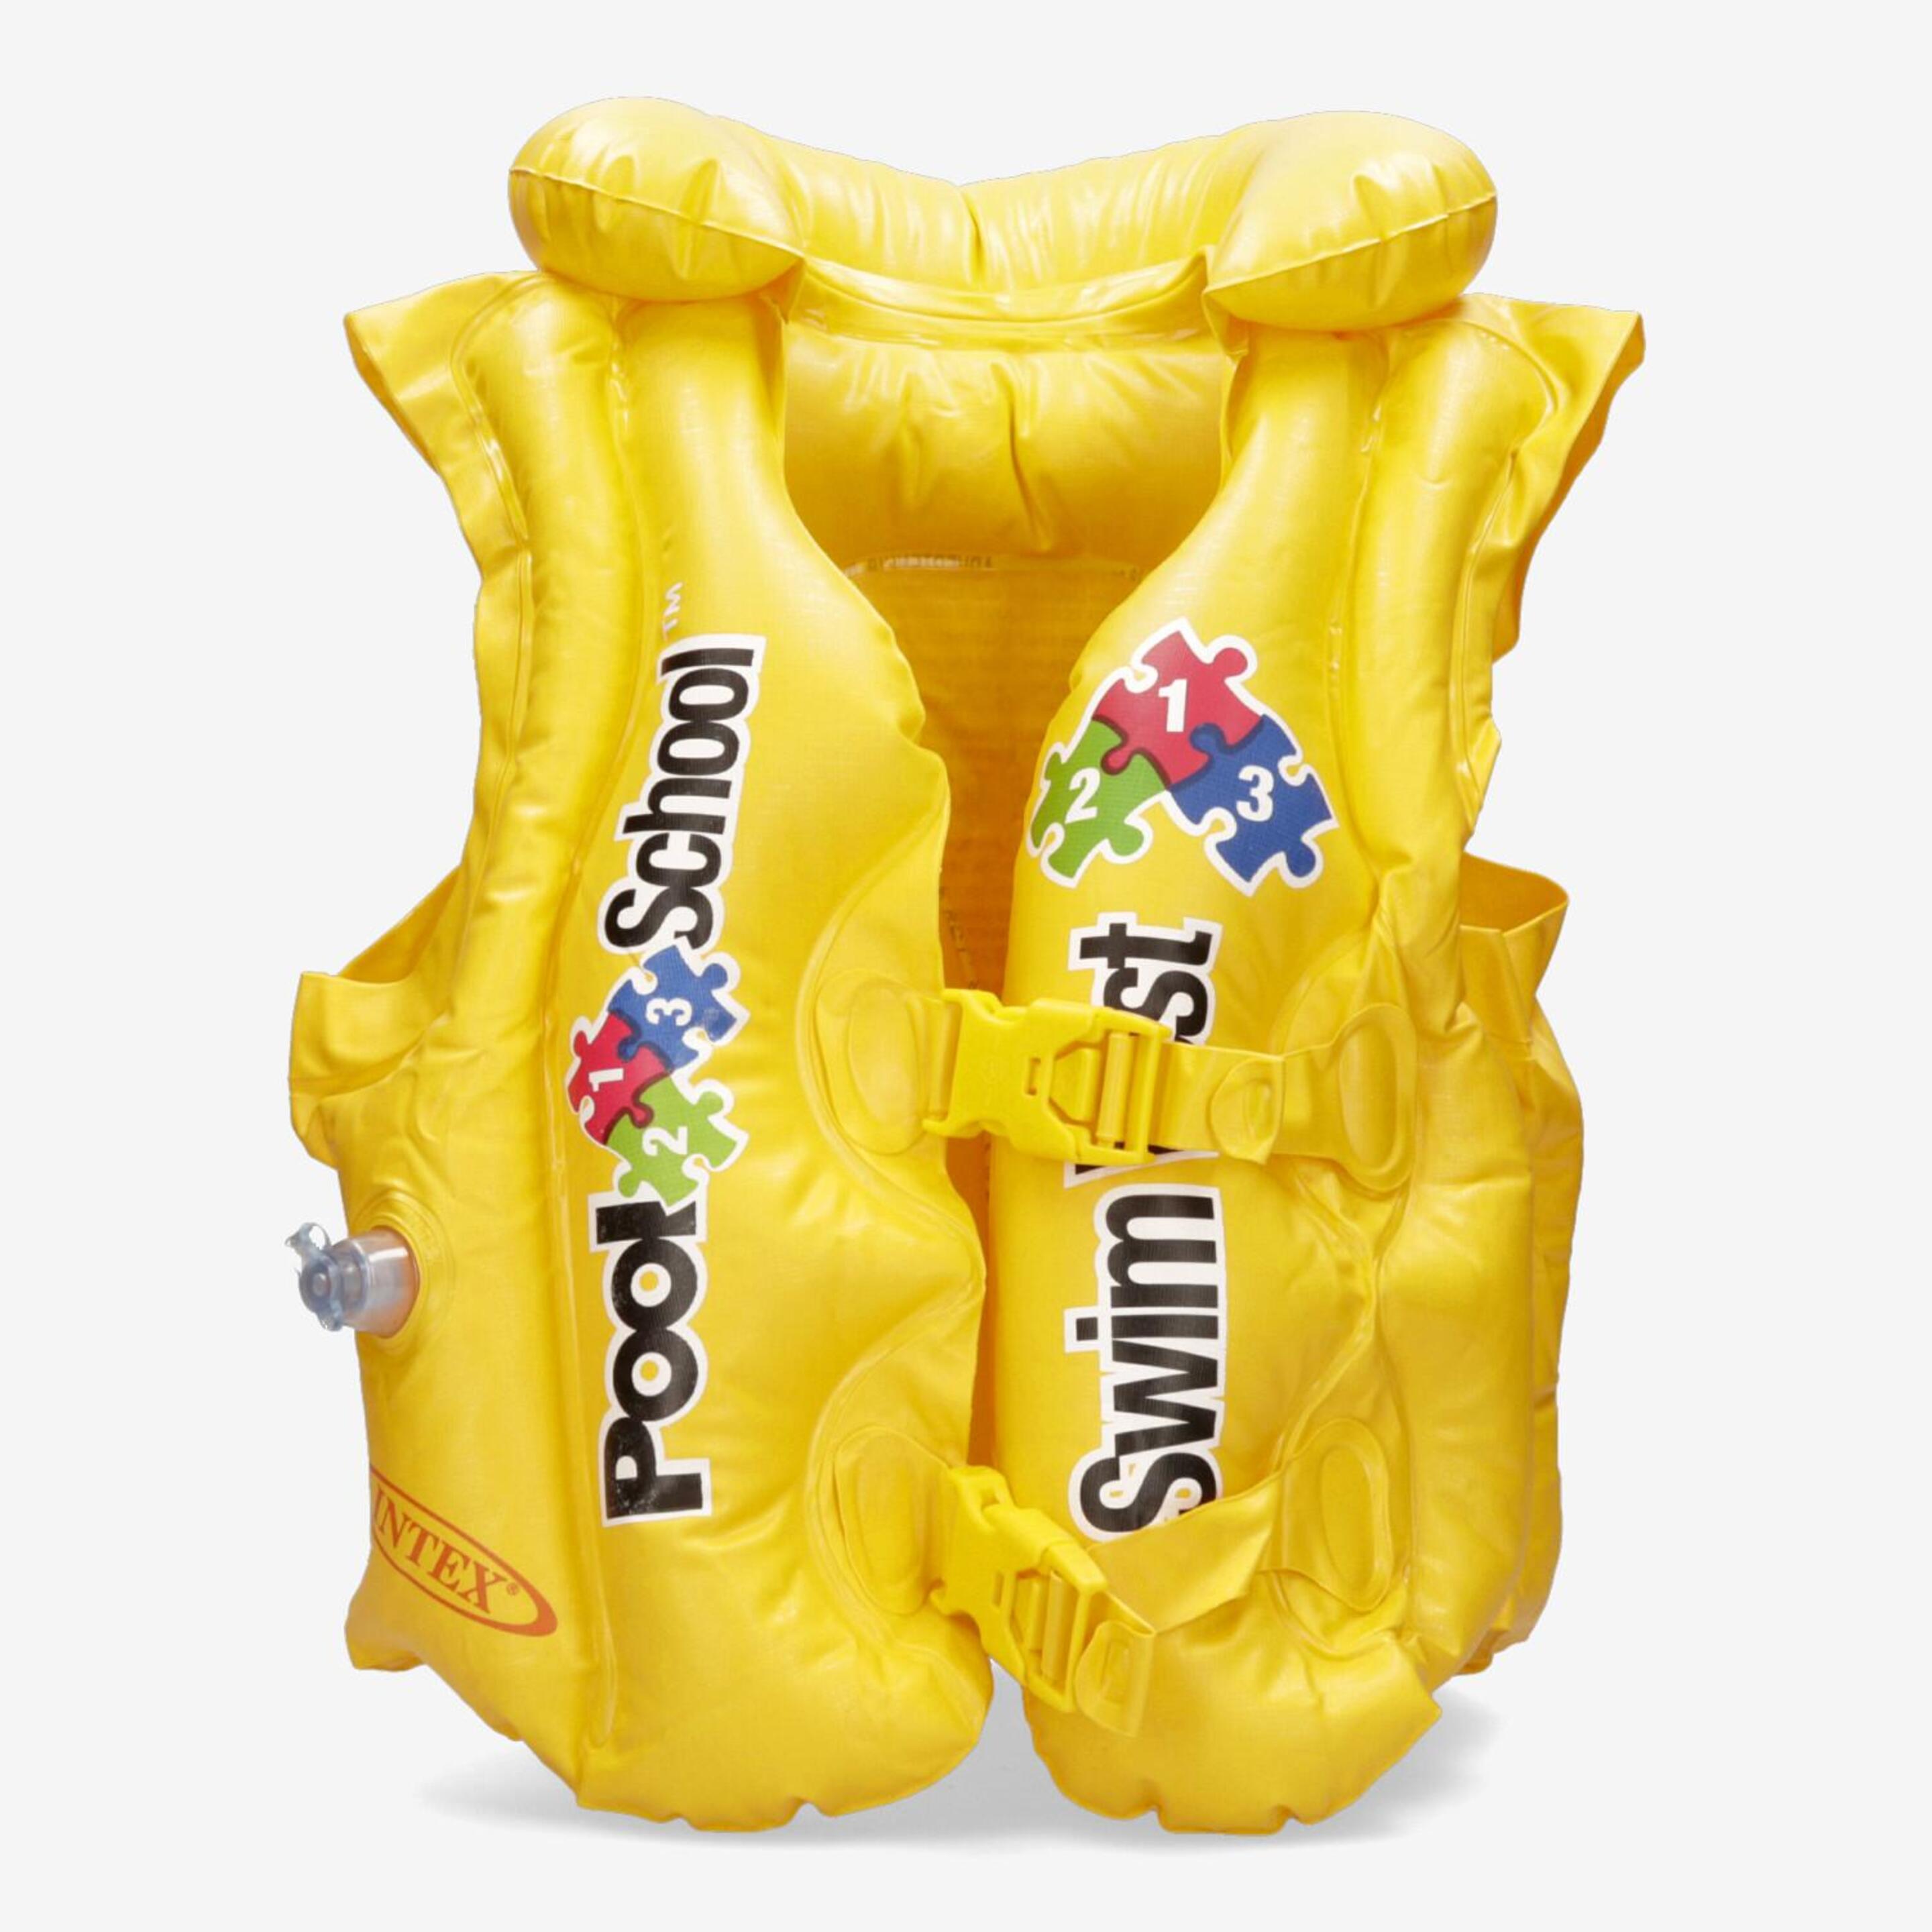 Colete Salva-vidas Intex - amarillo - Colete 3-6 Anos